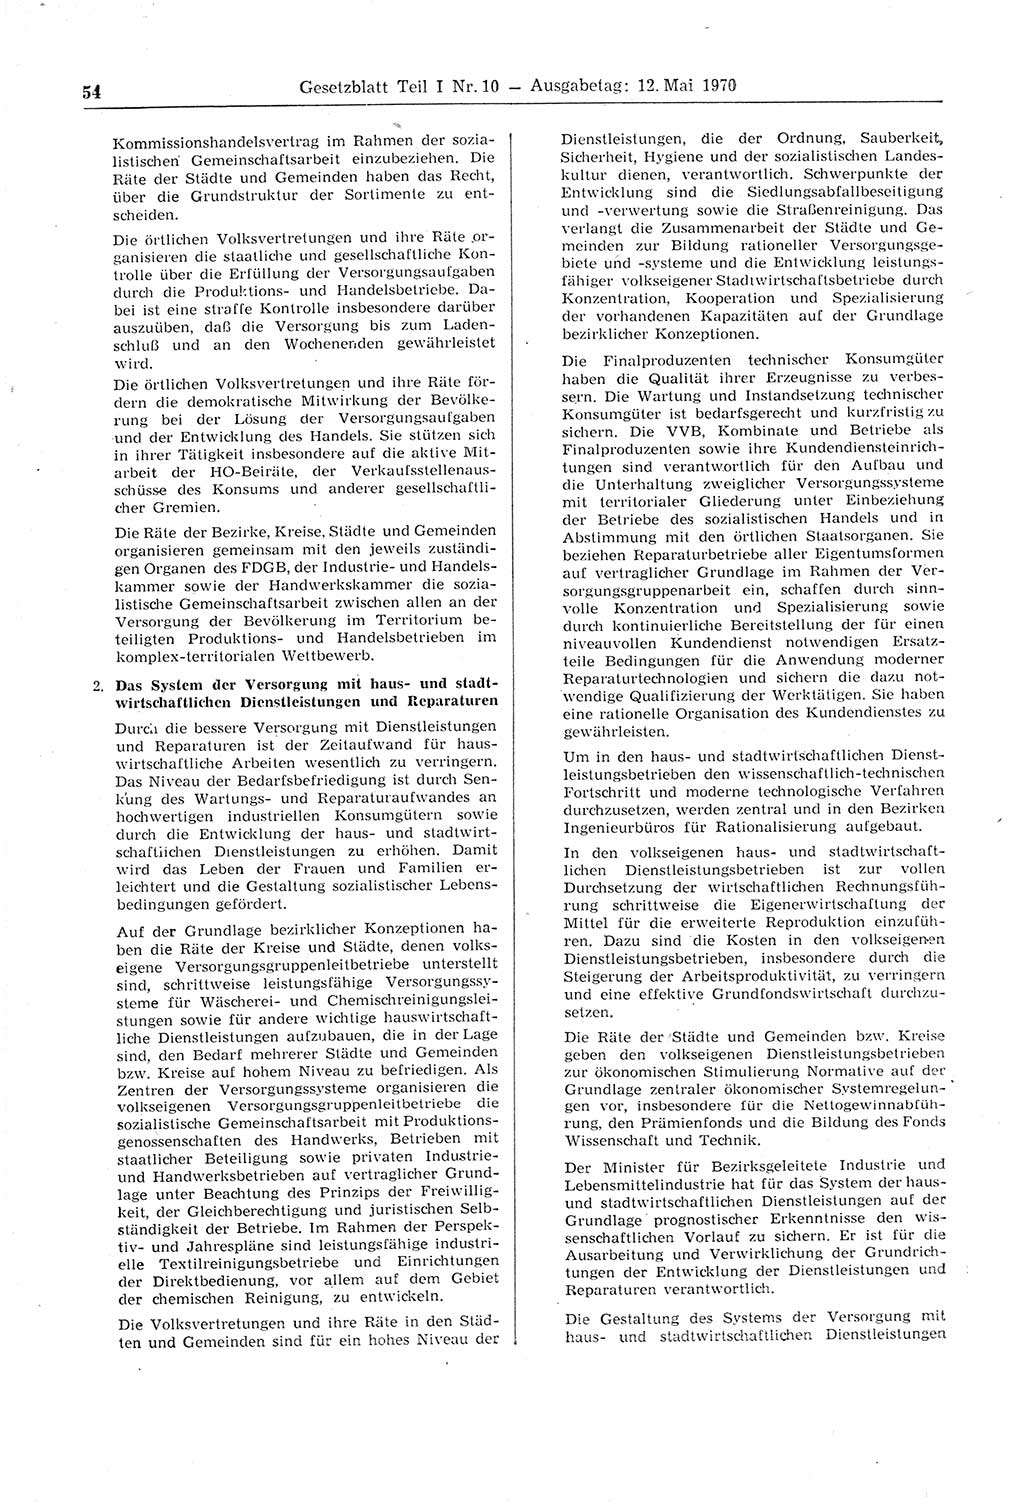 Gesetzblatt (GBl.) der Deutschen Demokratischen Republik (DDR) Teil Ⅰ 1970, Seite 54 (GBl. DDR Ⅰ 1970, S. 54)